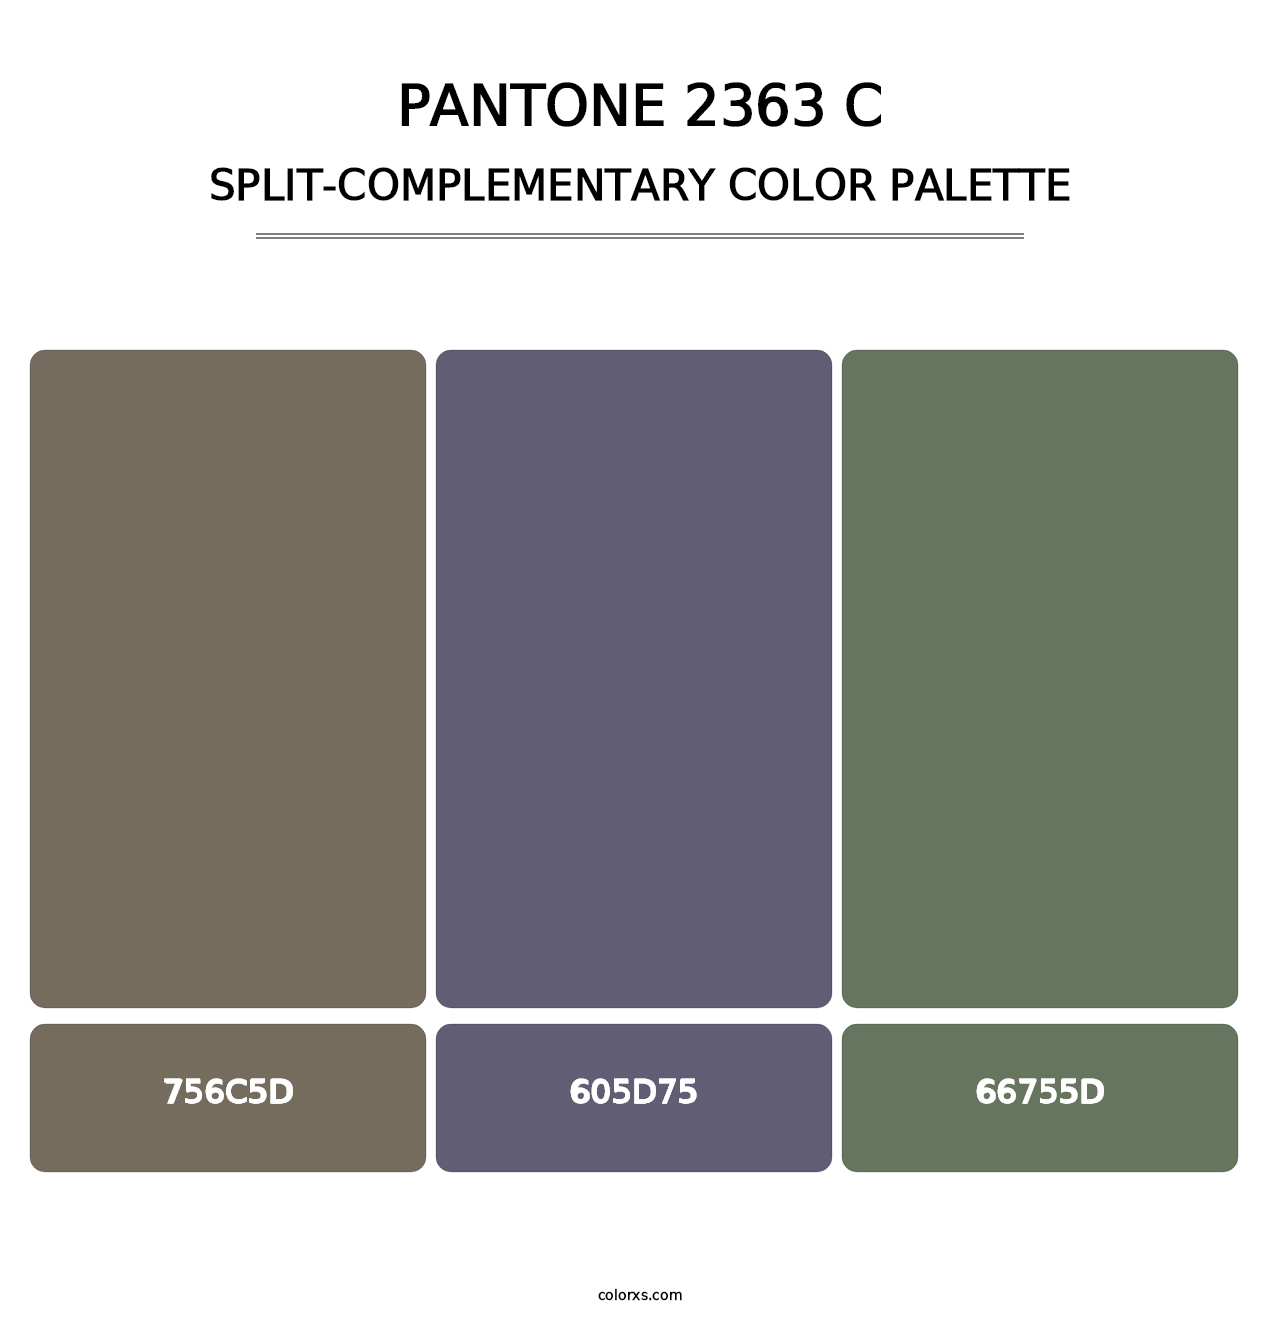 PANTONE 2363 C - Split-Complementary Color Palette